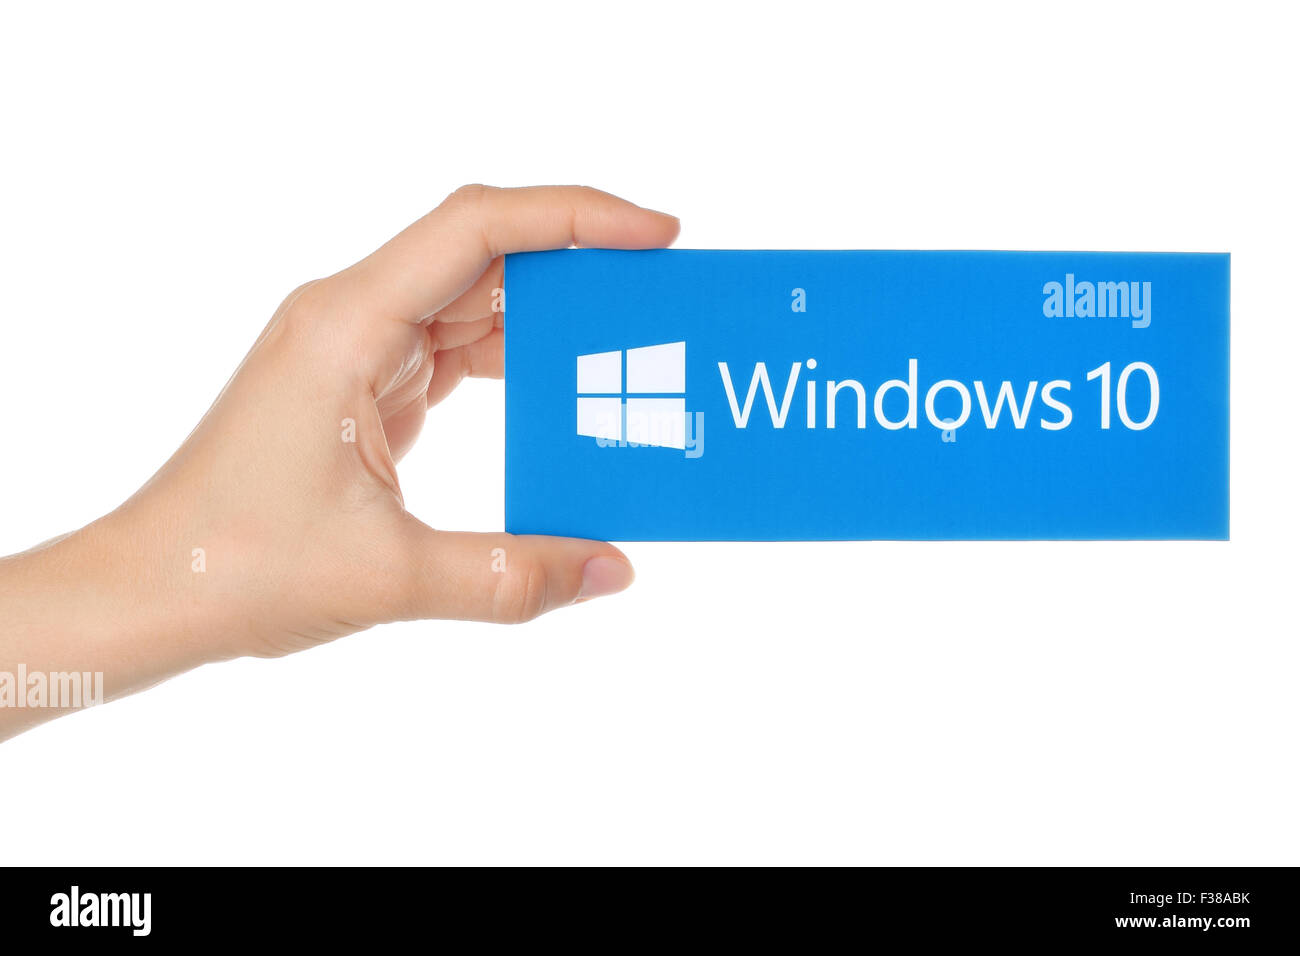 Kiew, UKRAINE - 18. AUGUST 2015:Hand hält Windows 10 Logo auf Papier gedruckt. Stockfoto